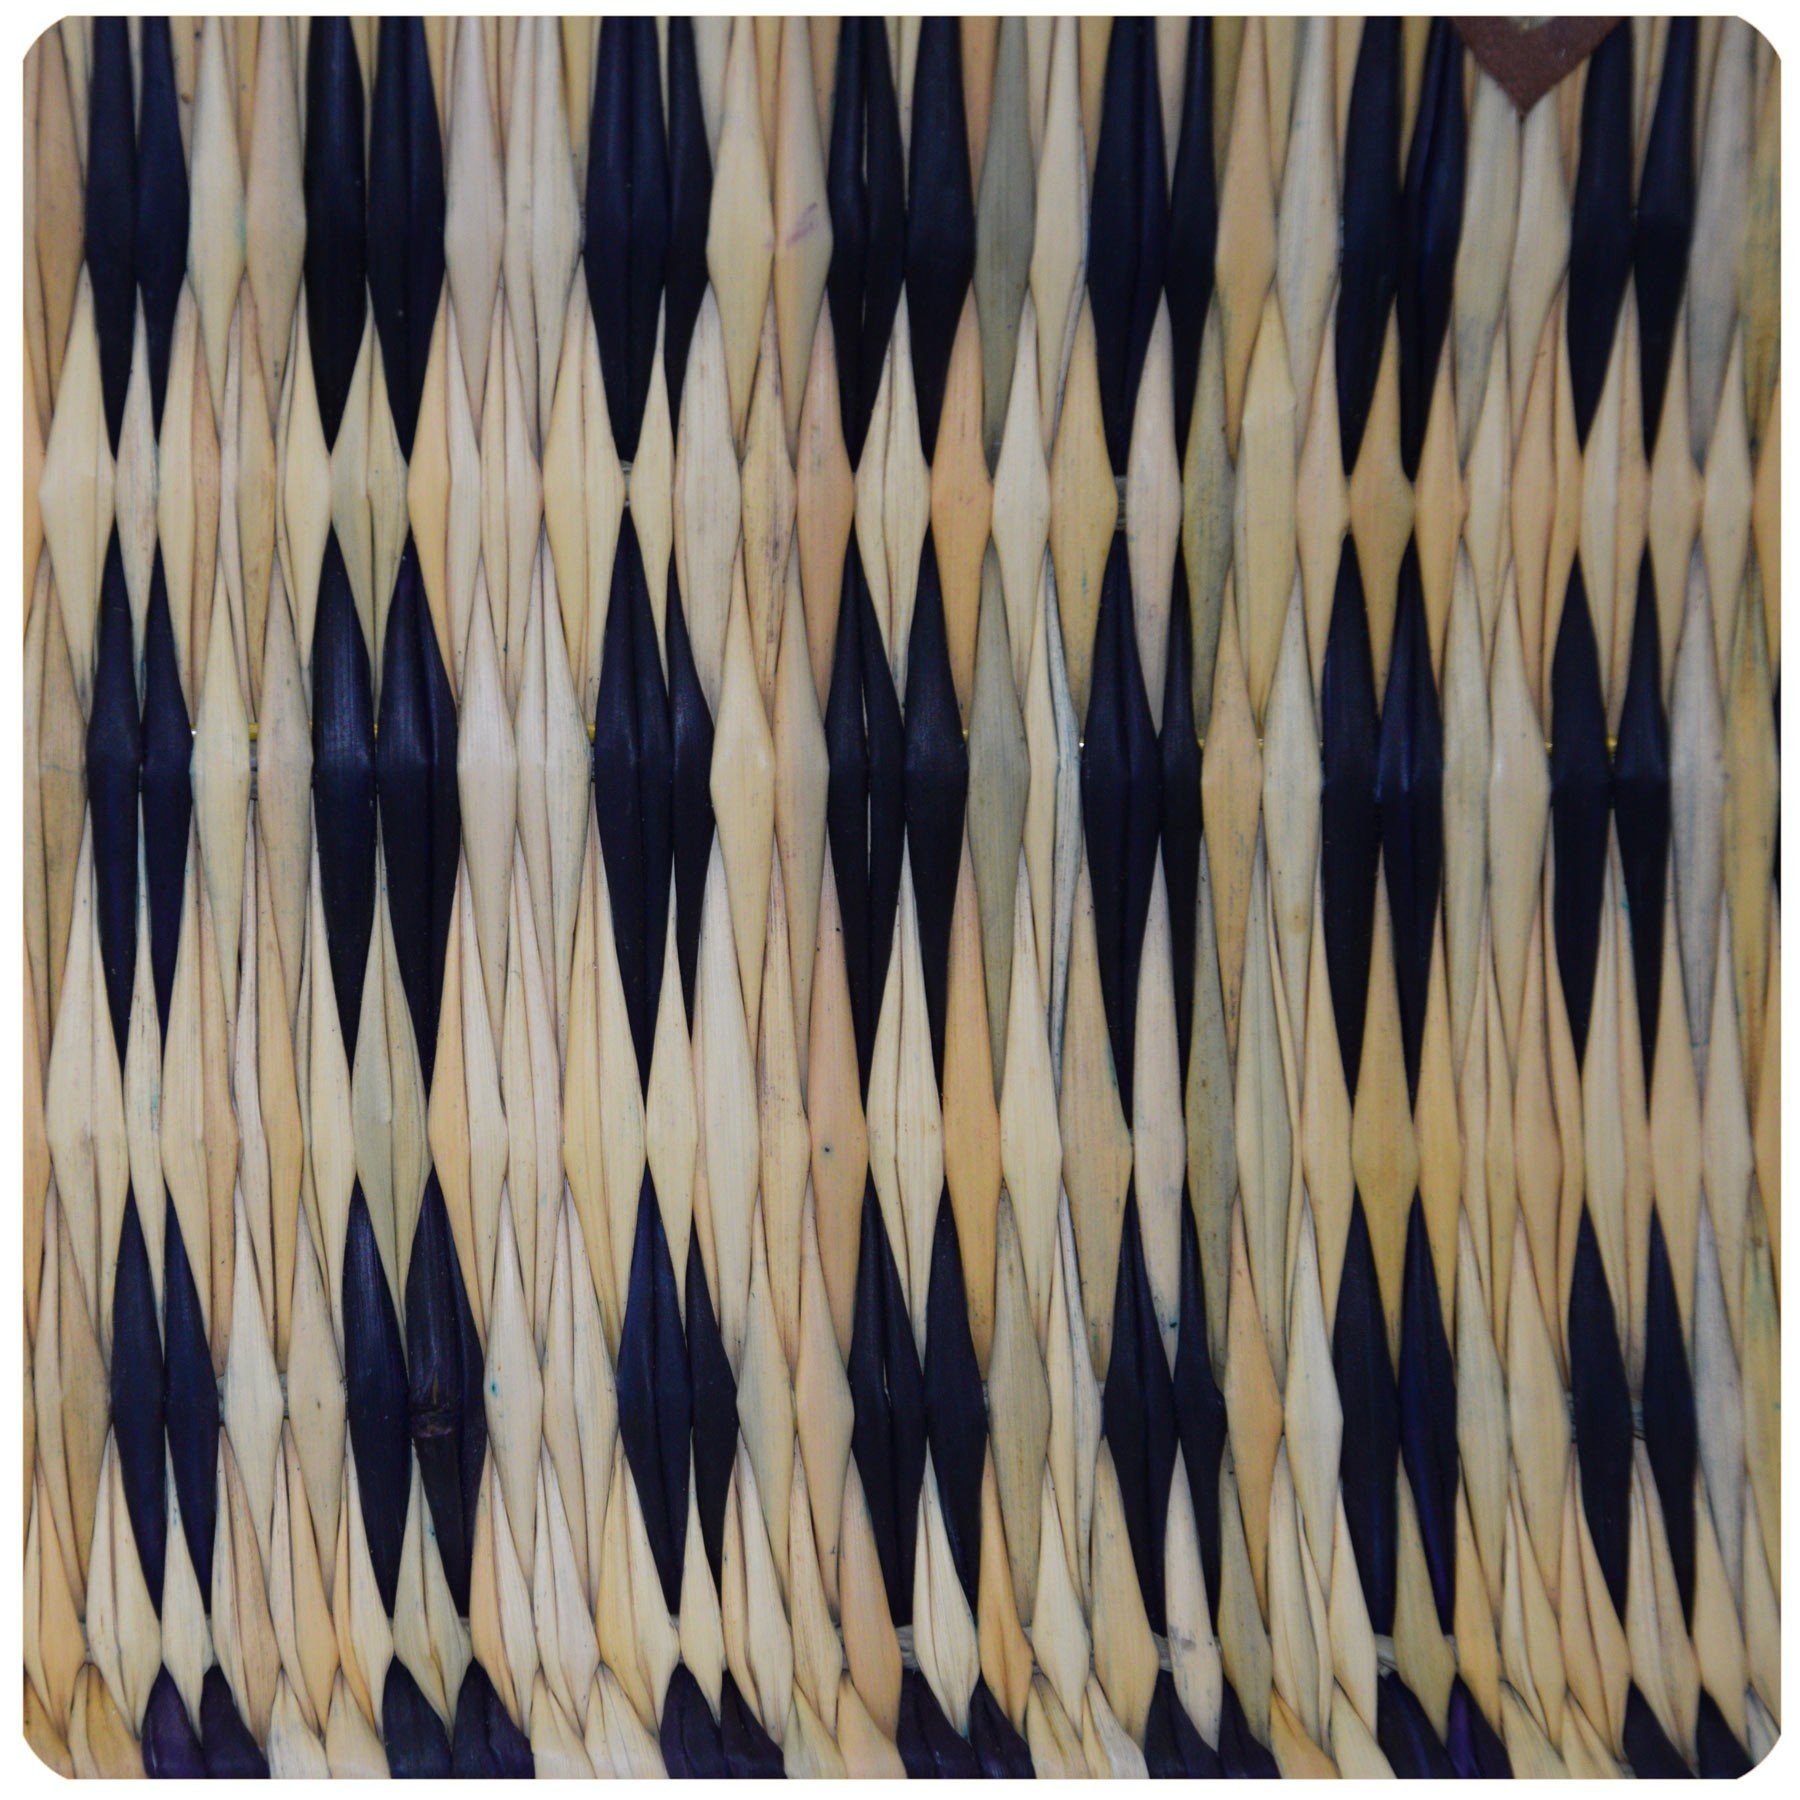 SIMANDRA Einkaufskorb Seegraskorb, langem l, mit Groß Trageriemen Blau 15